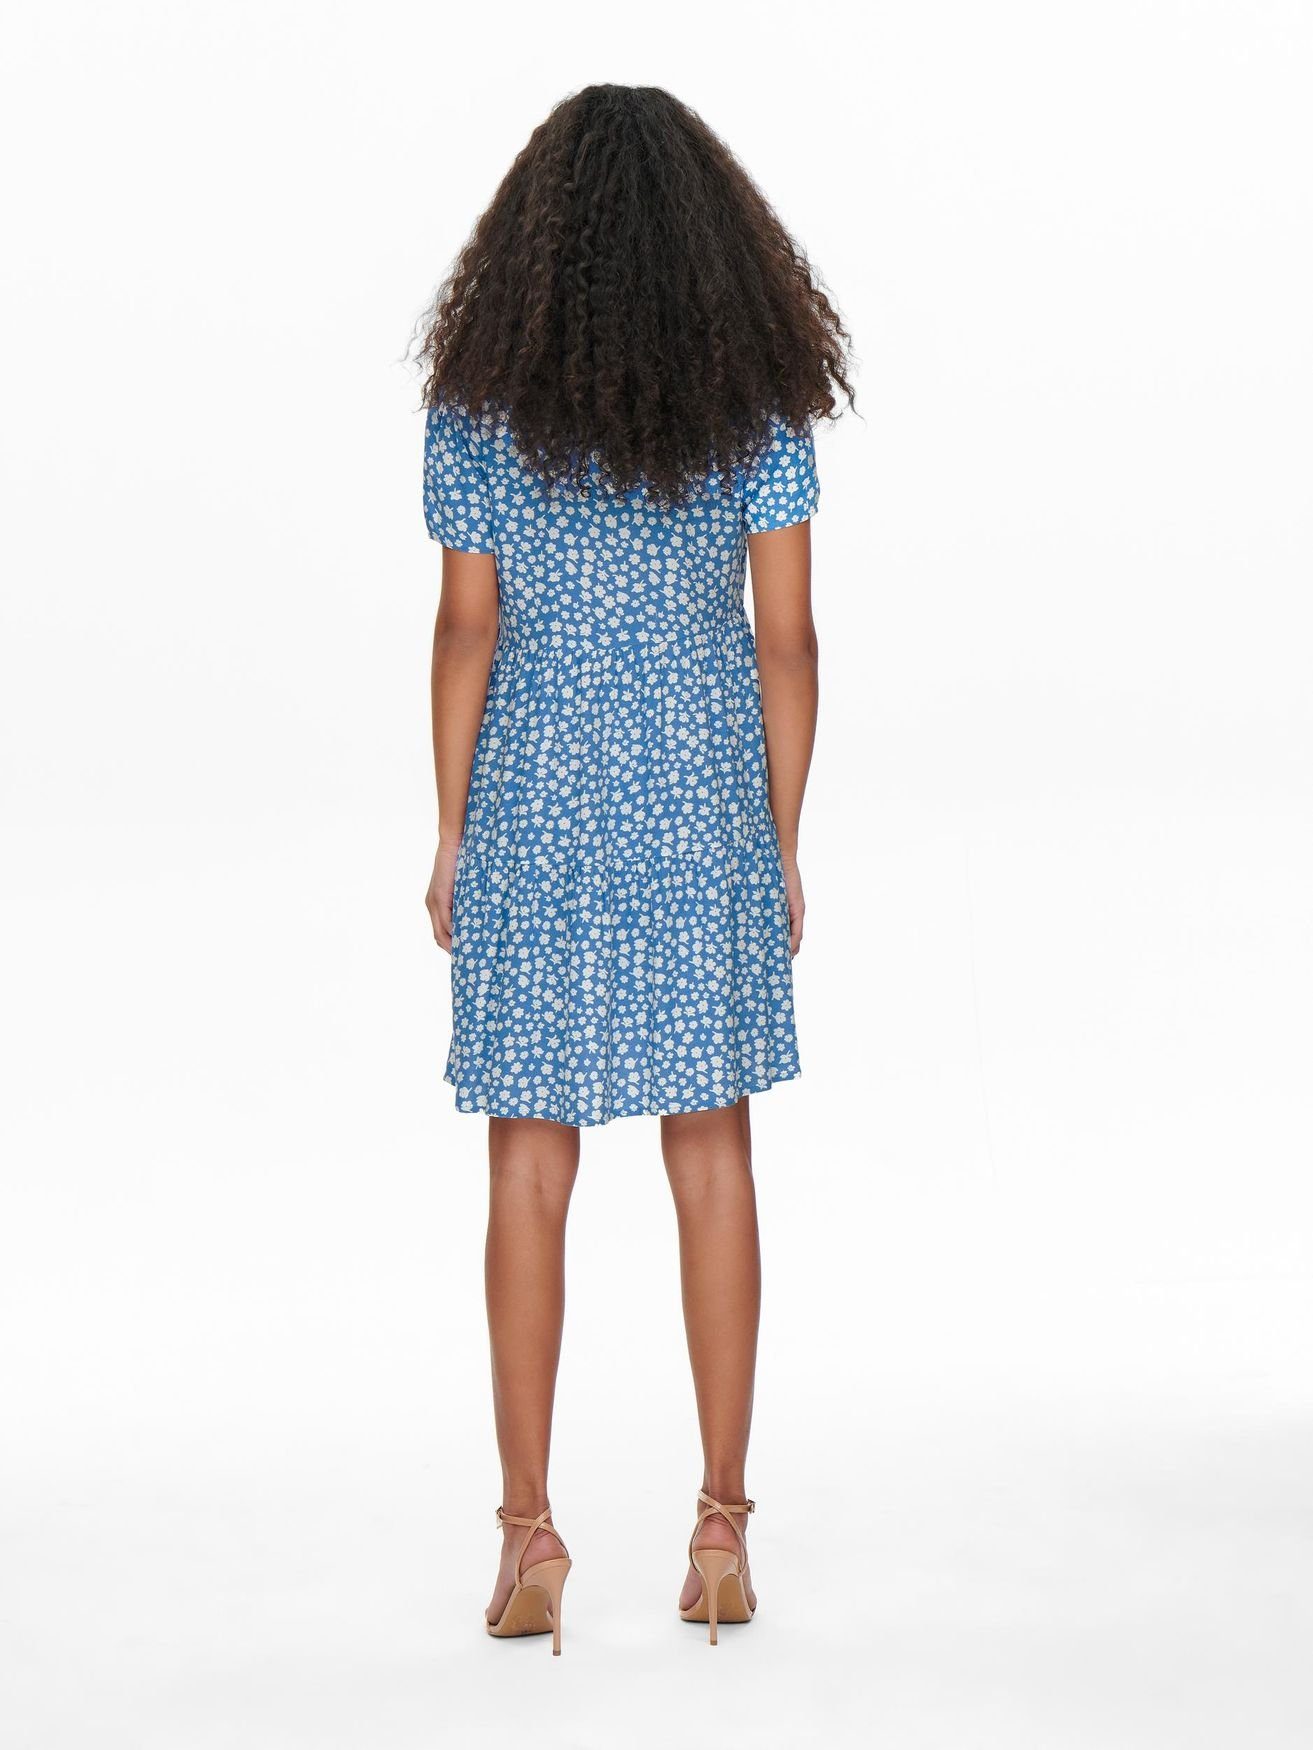 Blau ONLZALLY 4928 ONLY V-Ausschnitt Blusen Kleid Kurzes Shirtkleid in (knielang)